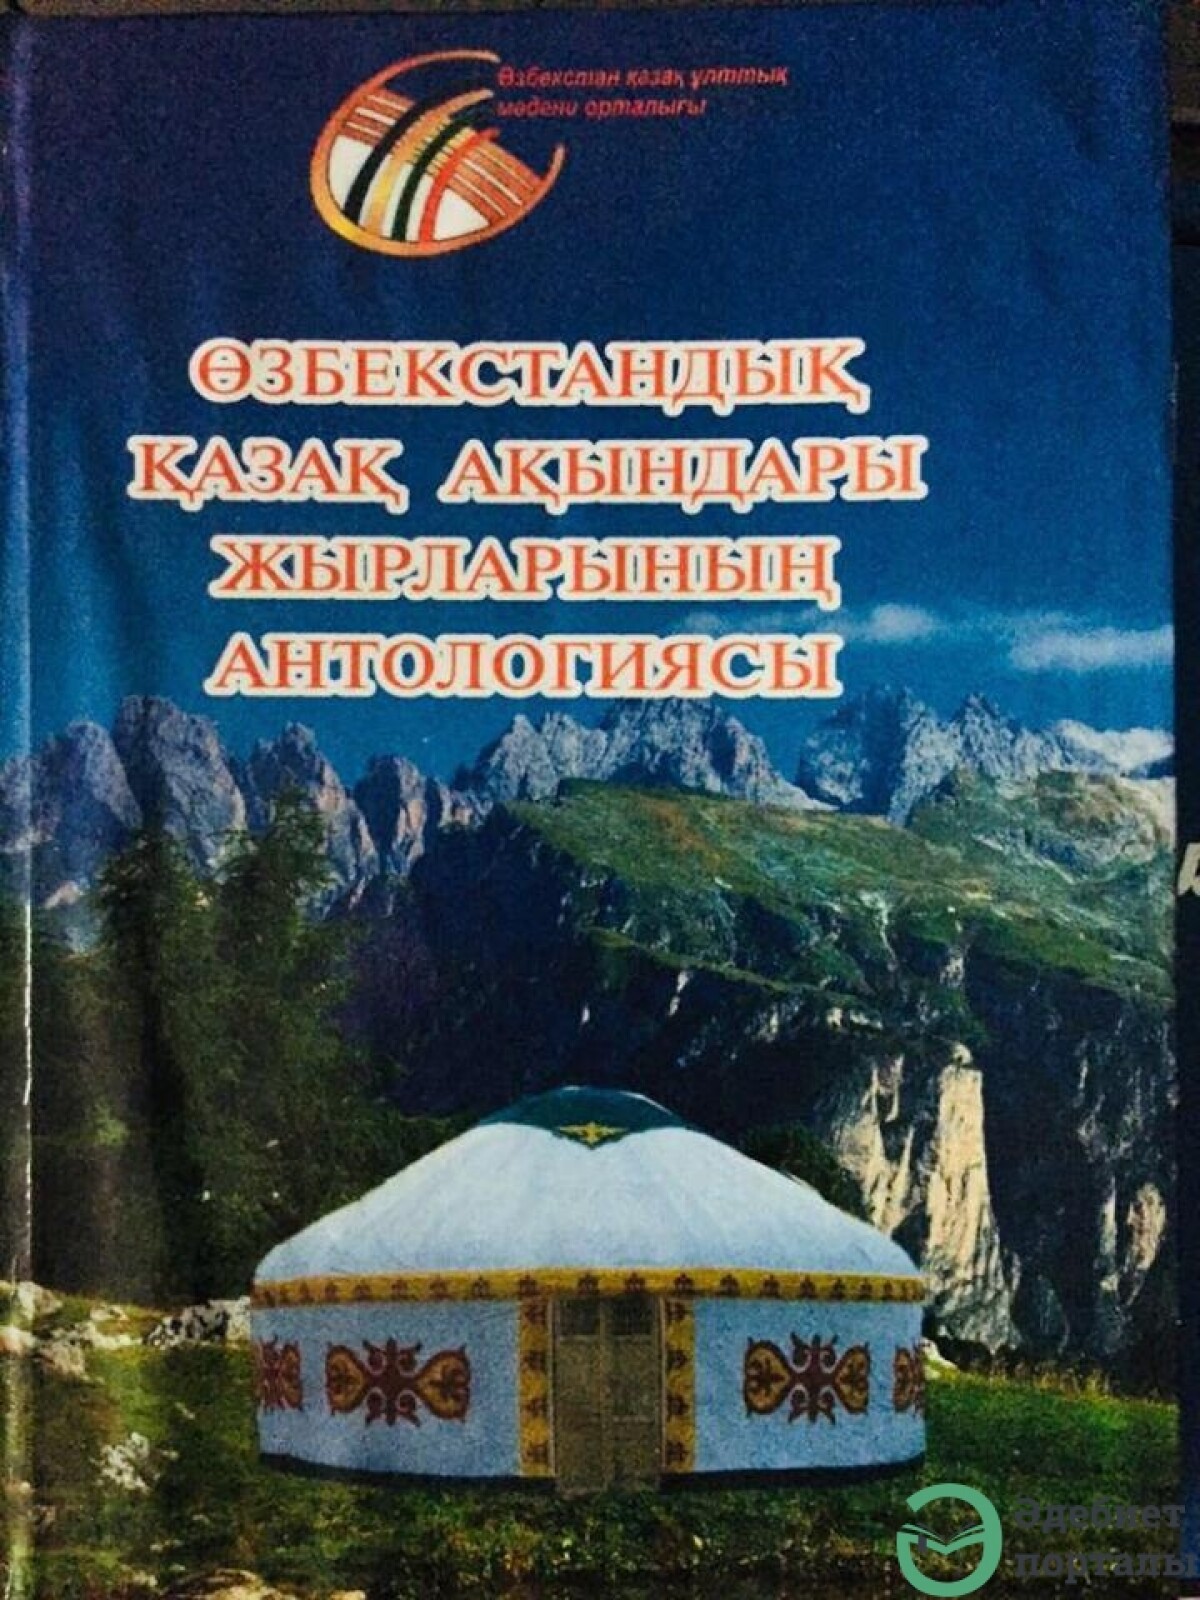 Өзбекстандағы қазақ ақыны – Ергөбек Құттыбайұлы - adebiportal.kz